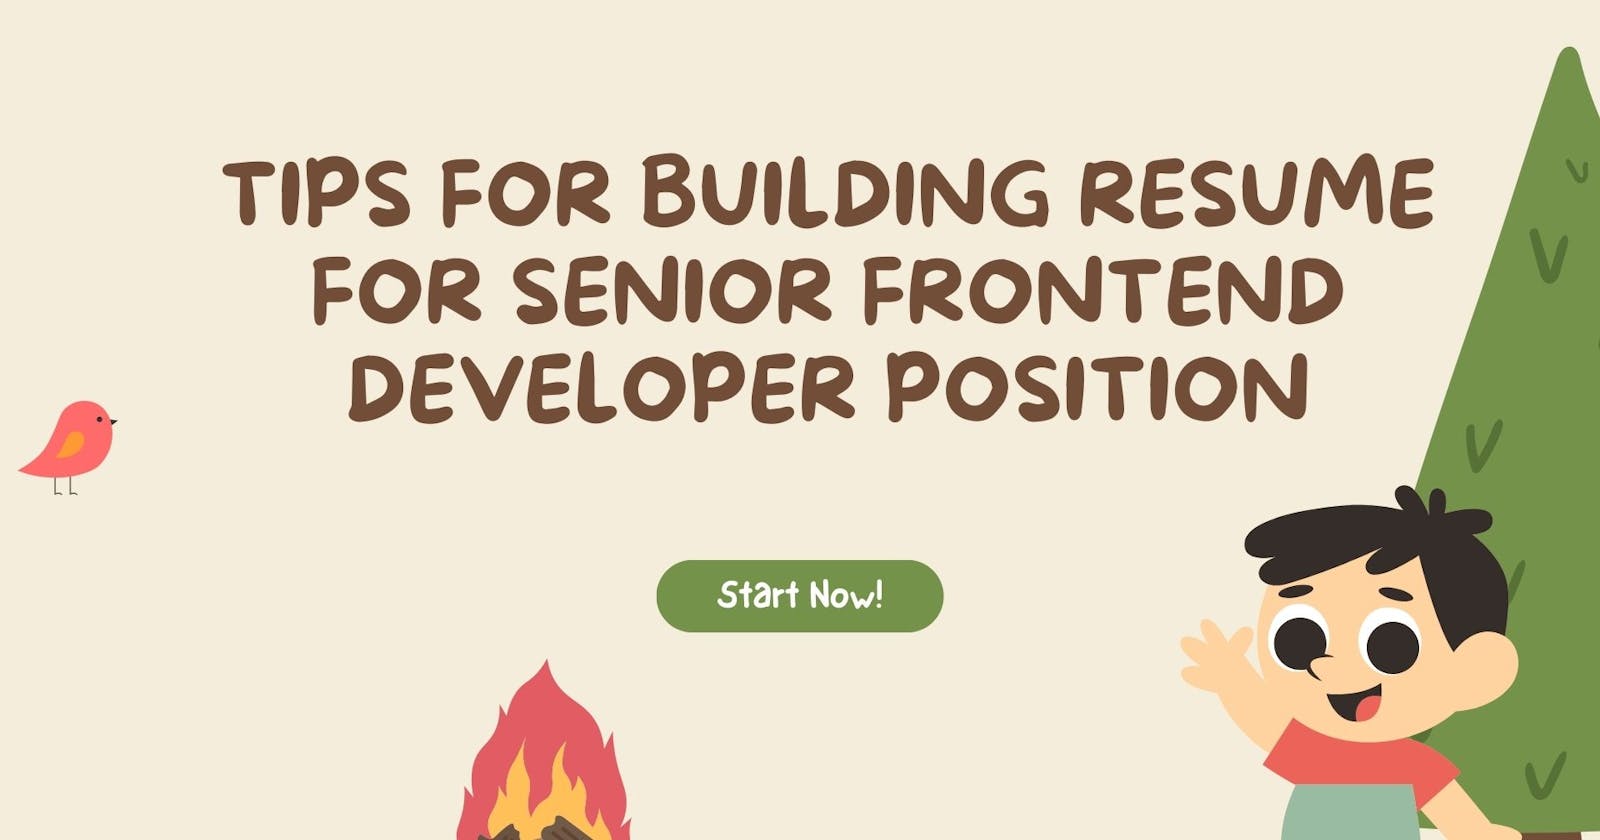 Tips for building resume for senior frontend developer position